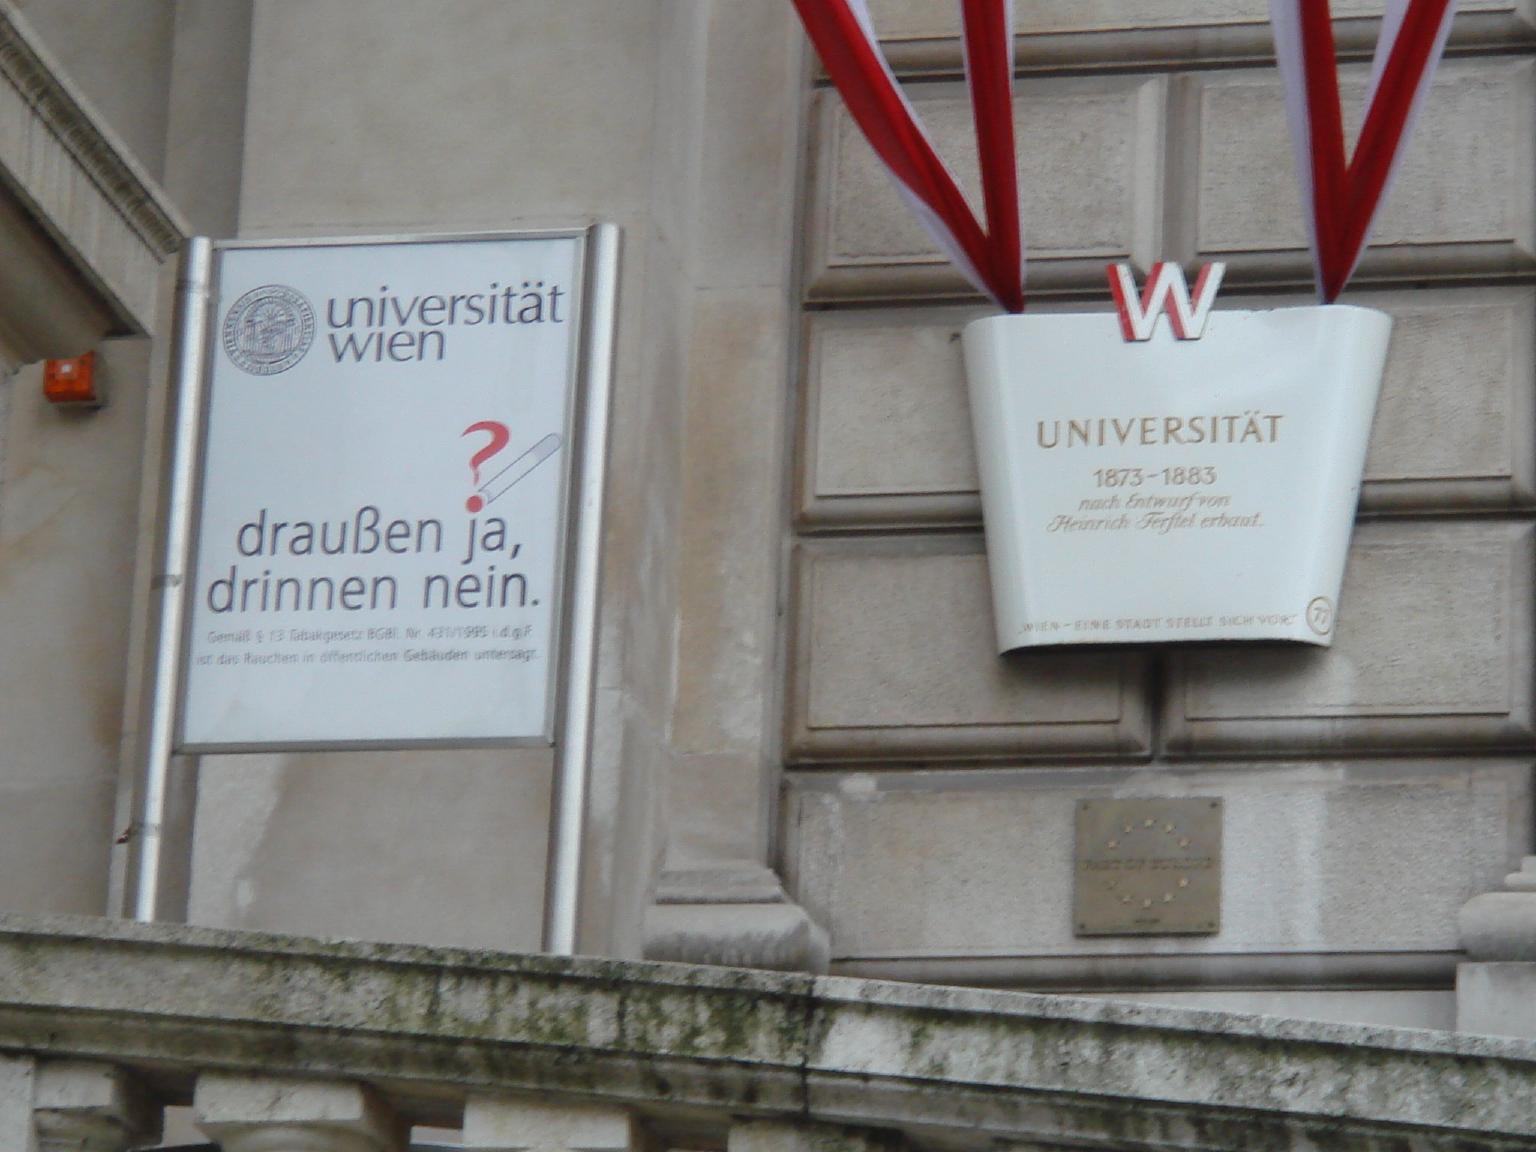 ウィーン大学。学内禁煙と書かれています。